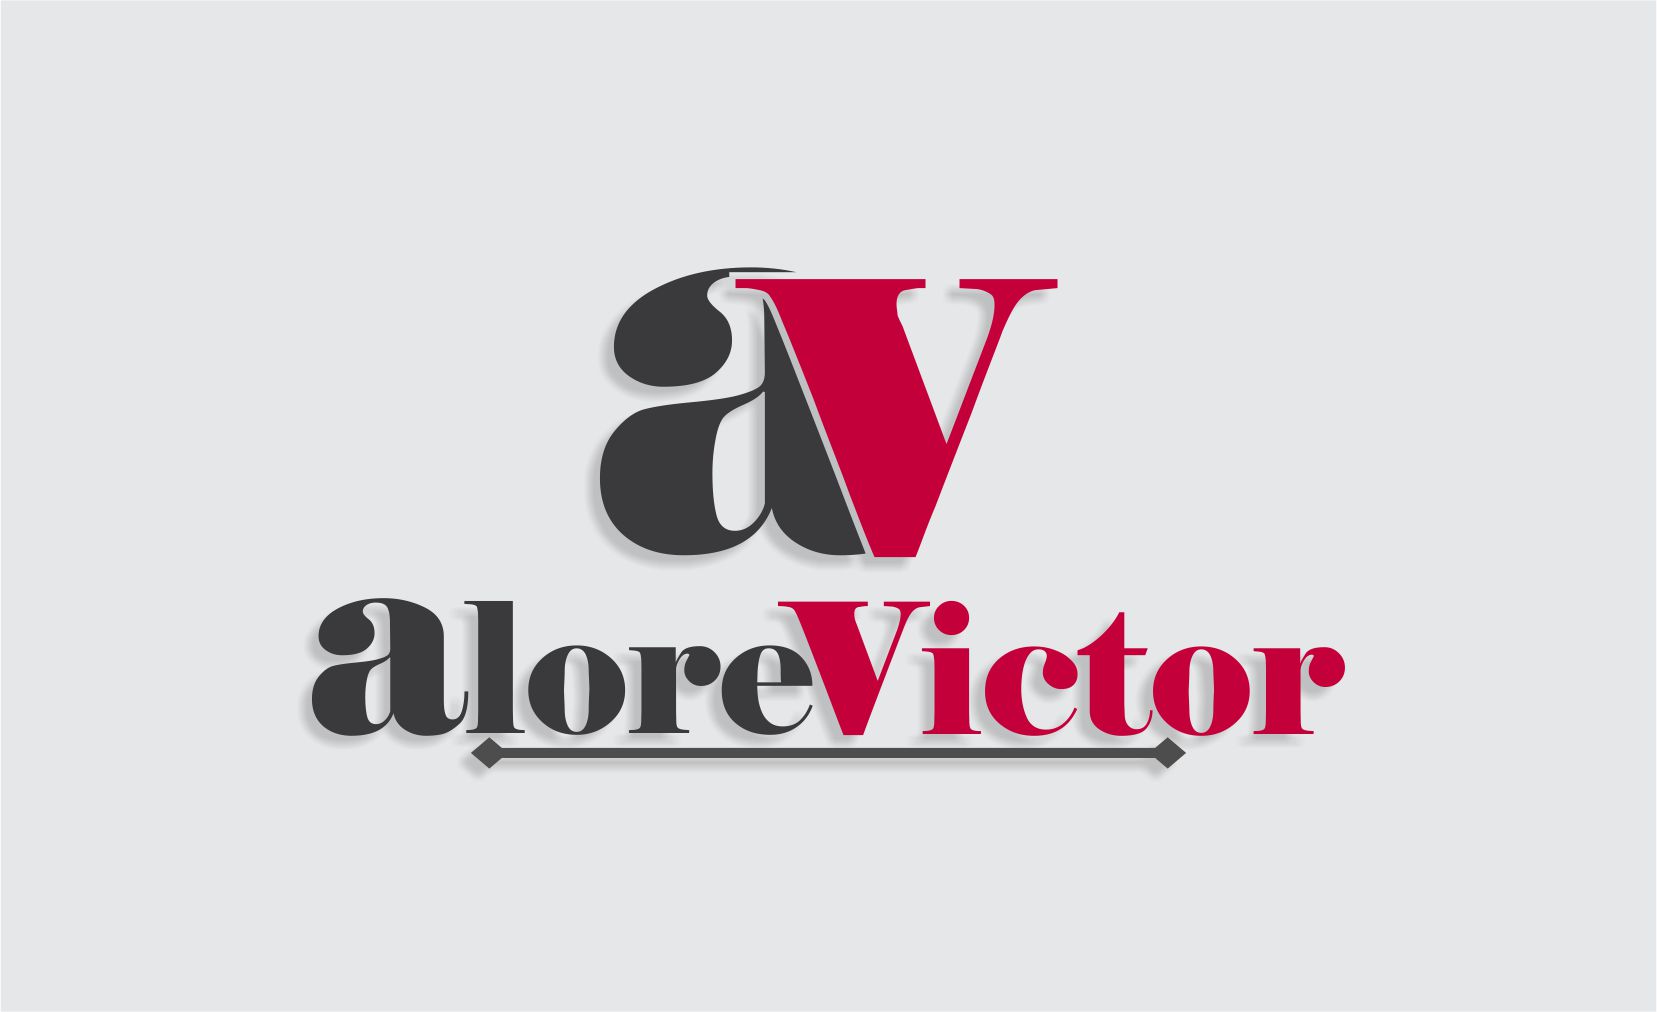 Alore Victor